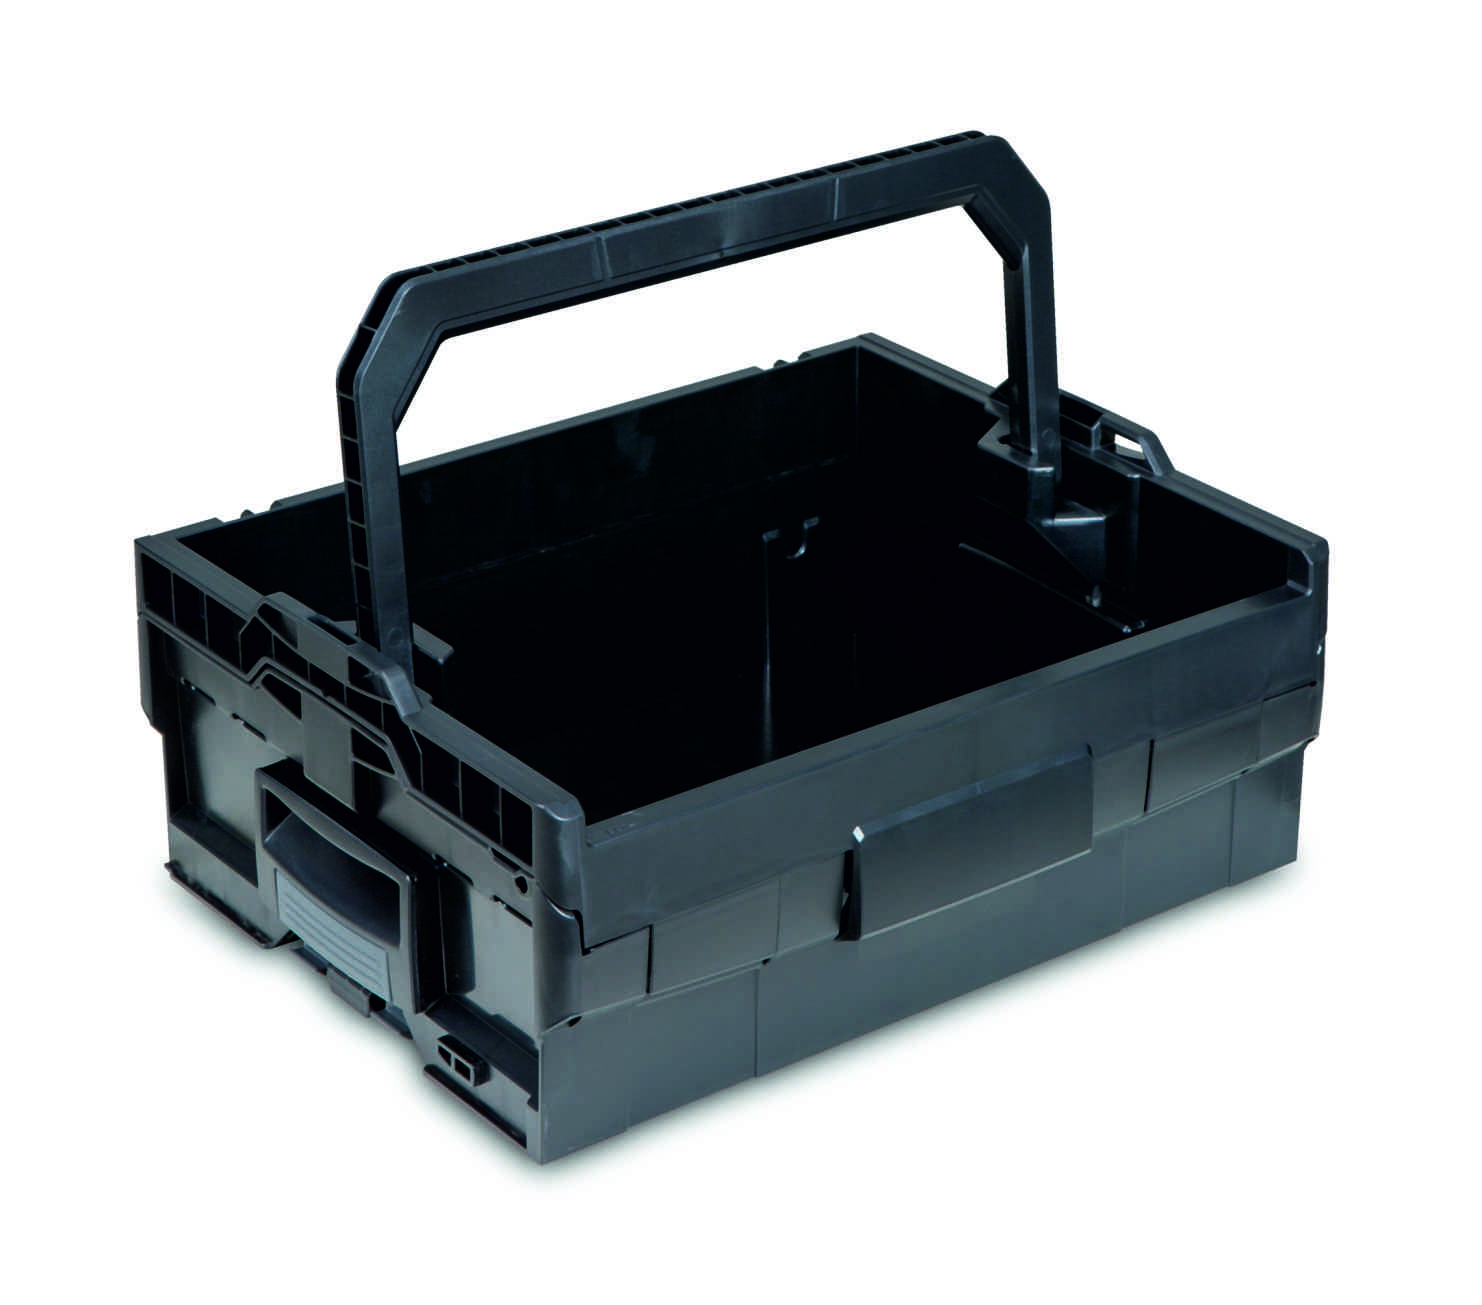 LT-BOXX 170 Werkzeugkiste mit invividueller Schaumstoffeinlage aus XPE35 blau-schwarz